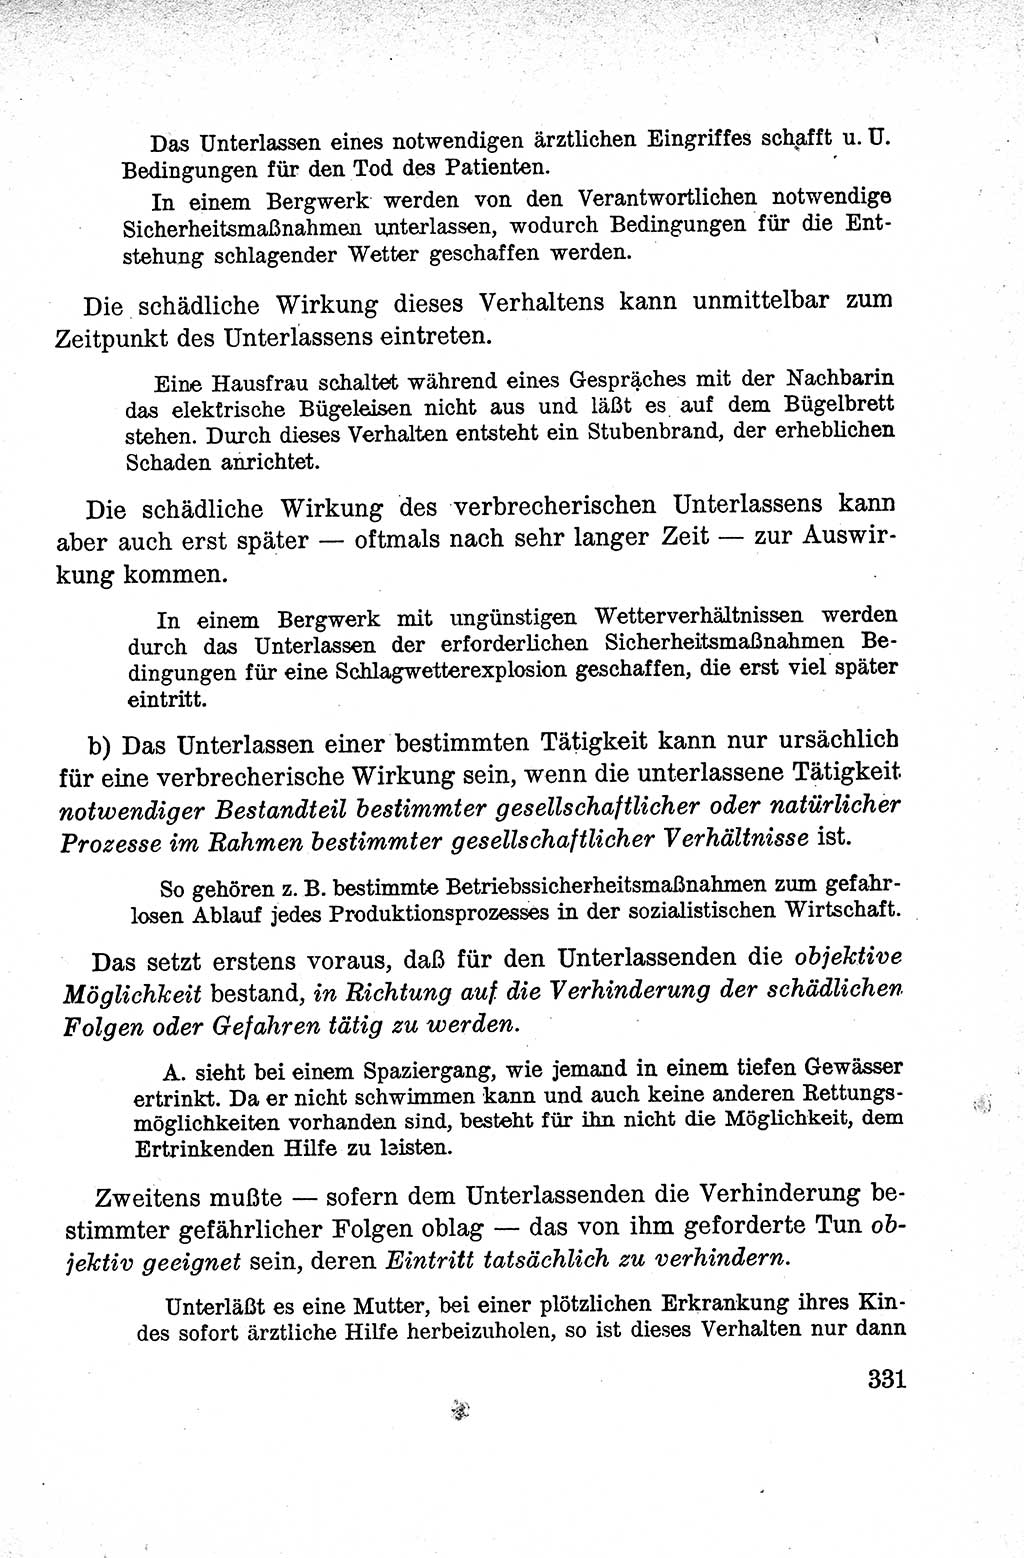 Lehrbuch des Strafrechts der Deutschen Demokratischen Republik (DDR), Allgemeiner Teil 1959, Seite 331 (Lb. Strafr. DDR AT 1959, S. 331)